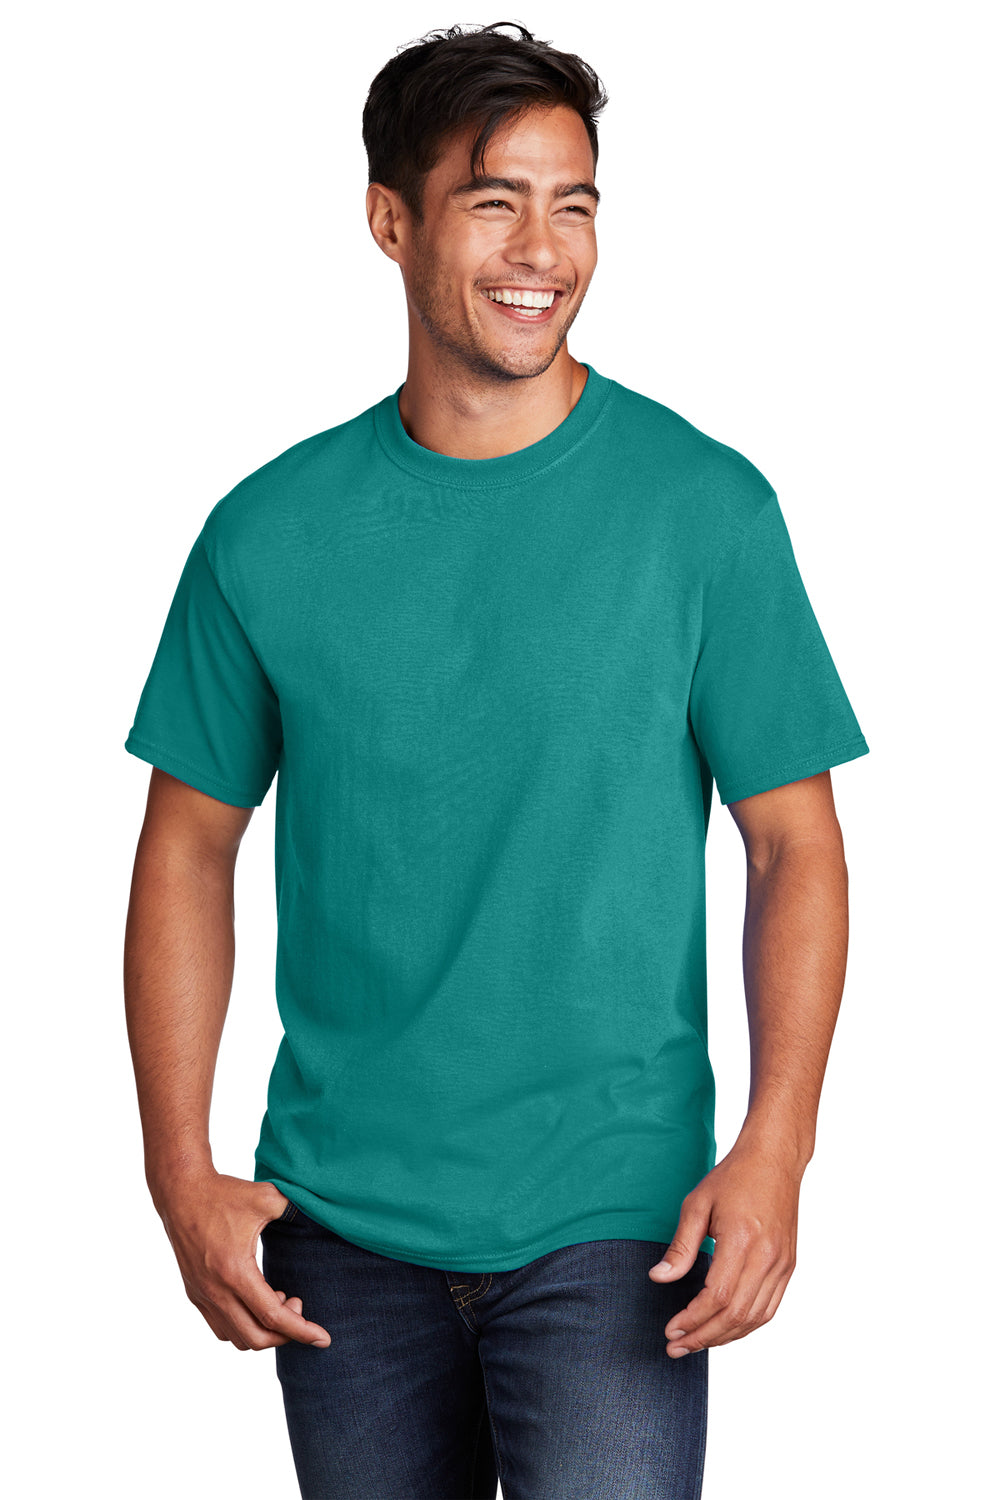 Port & Company PC54/PC54T Mens Core Short Sleeve Crewneck T-Shirt Bright Aqua Blue Front